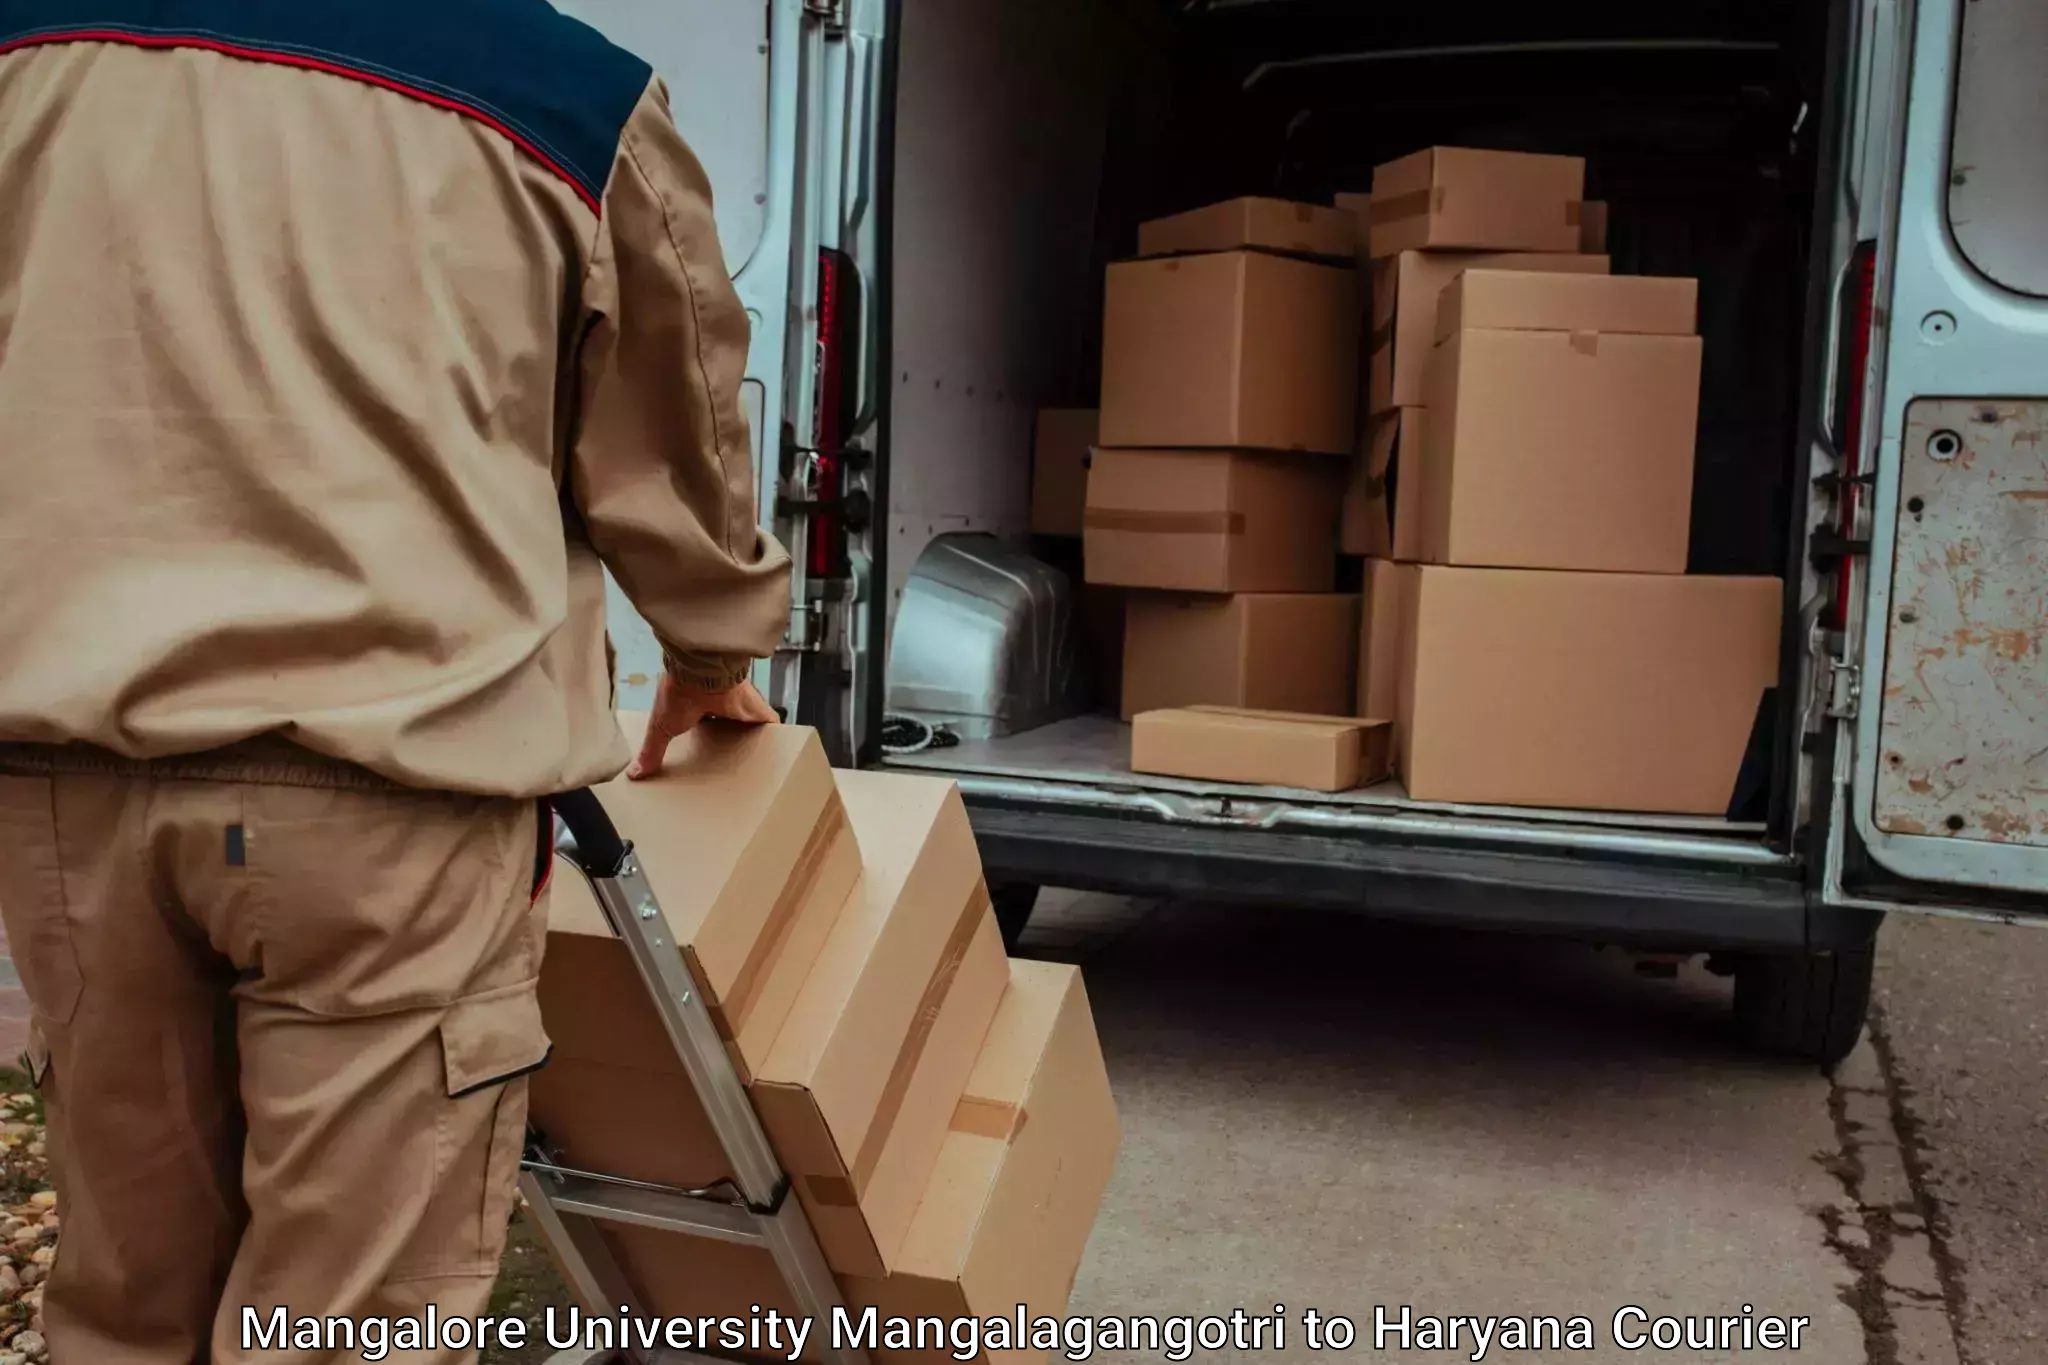 Household moving and storage Mangalore University Mangalagangotri to Haryana